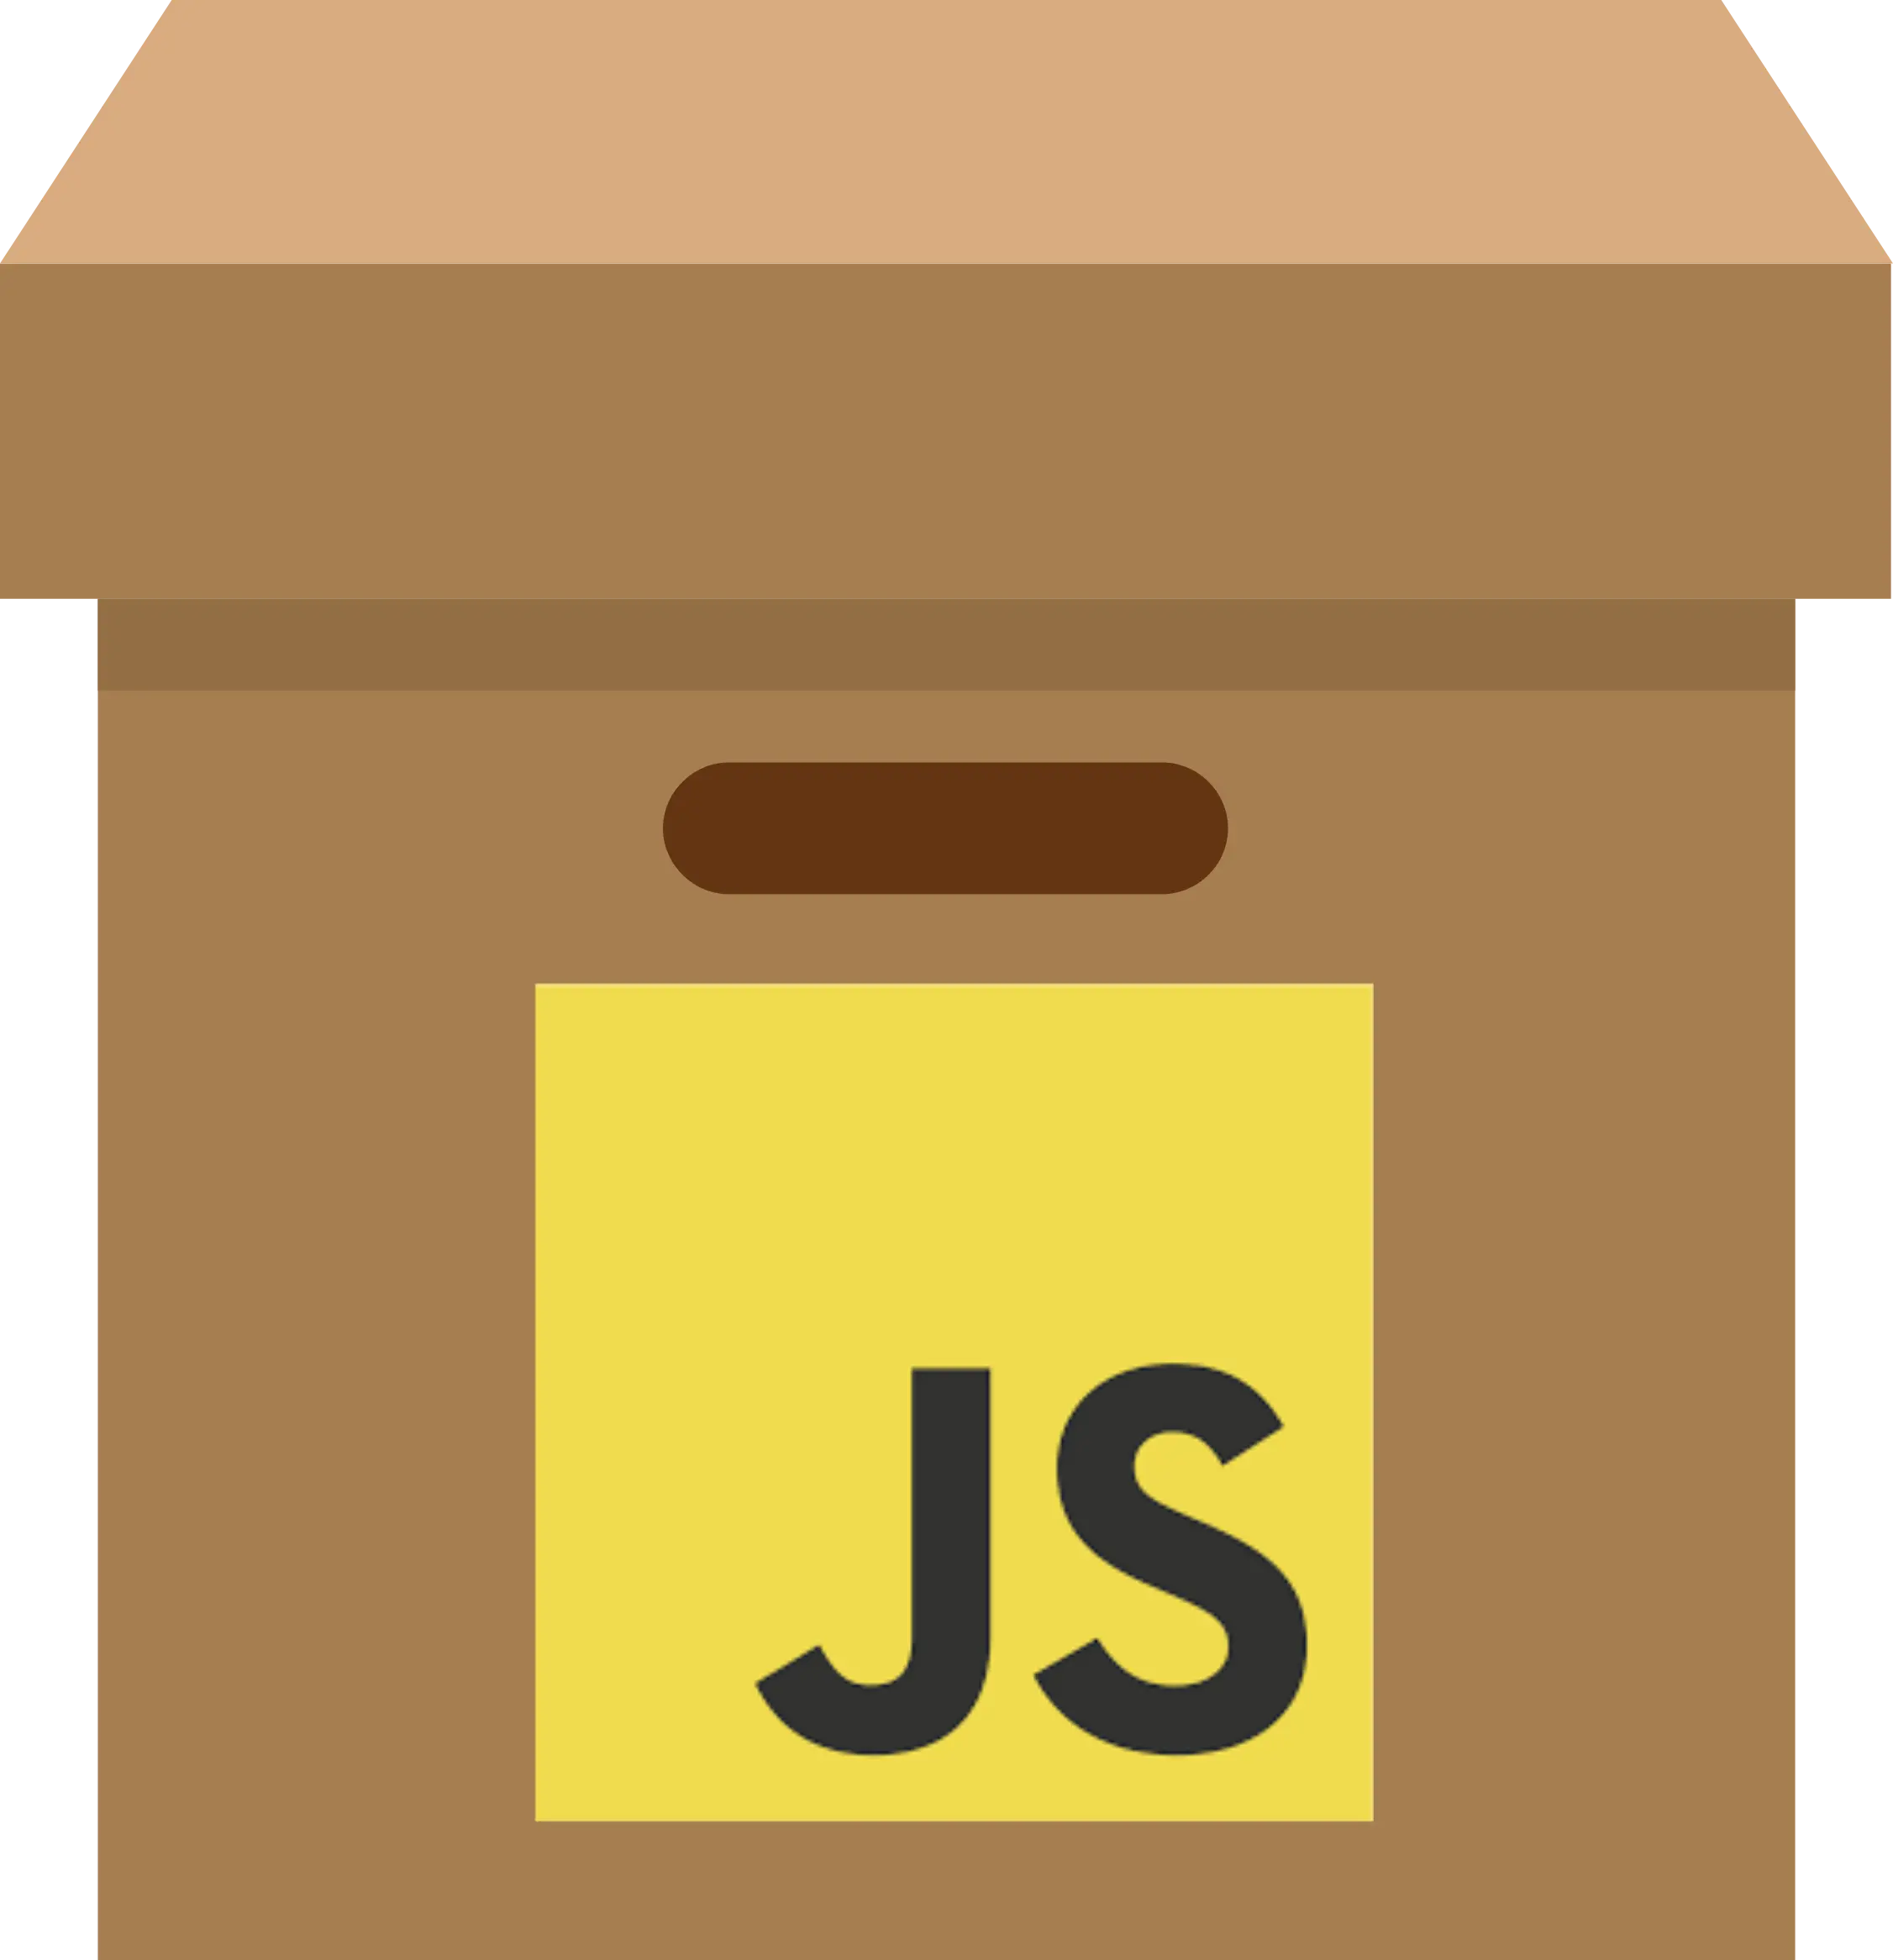 Full JavaScript Complete Pack for VSCode